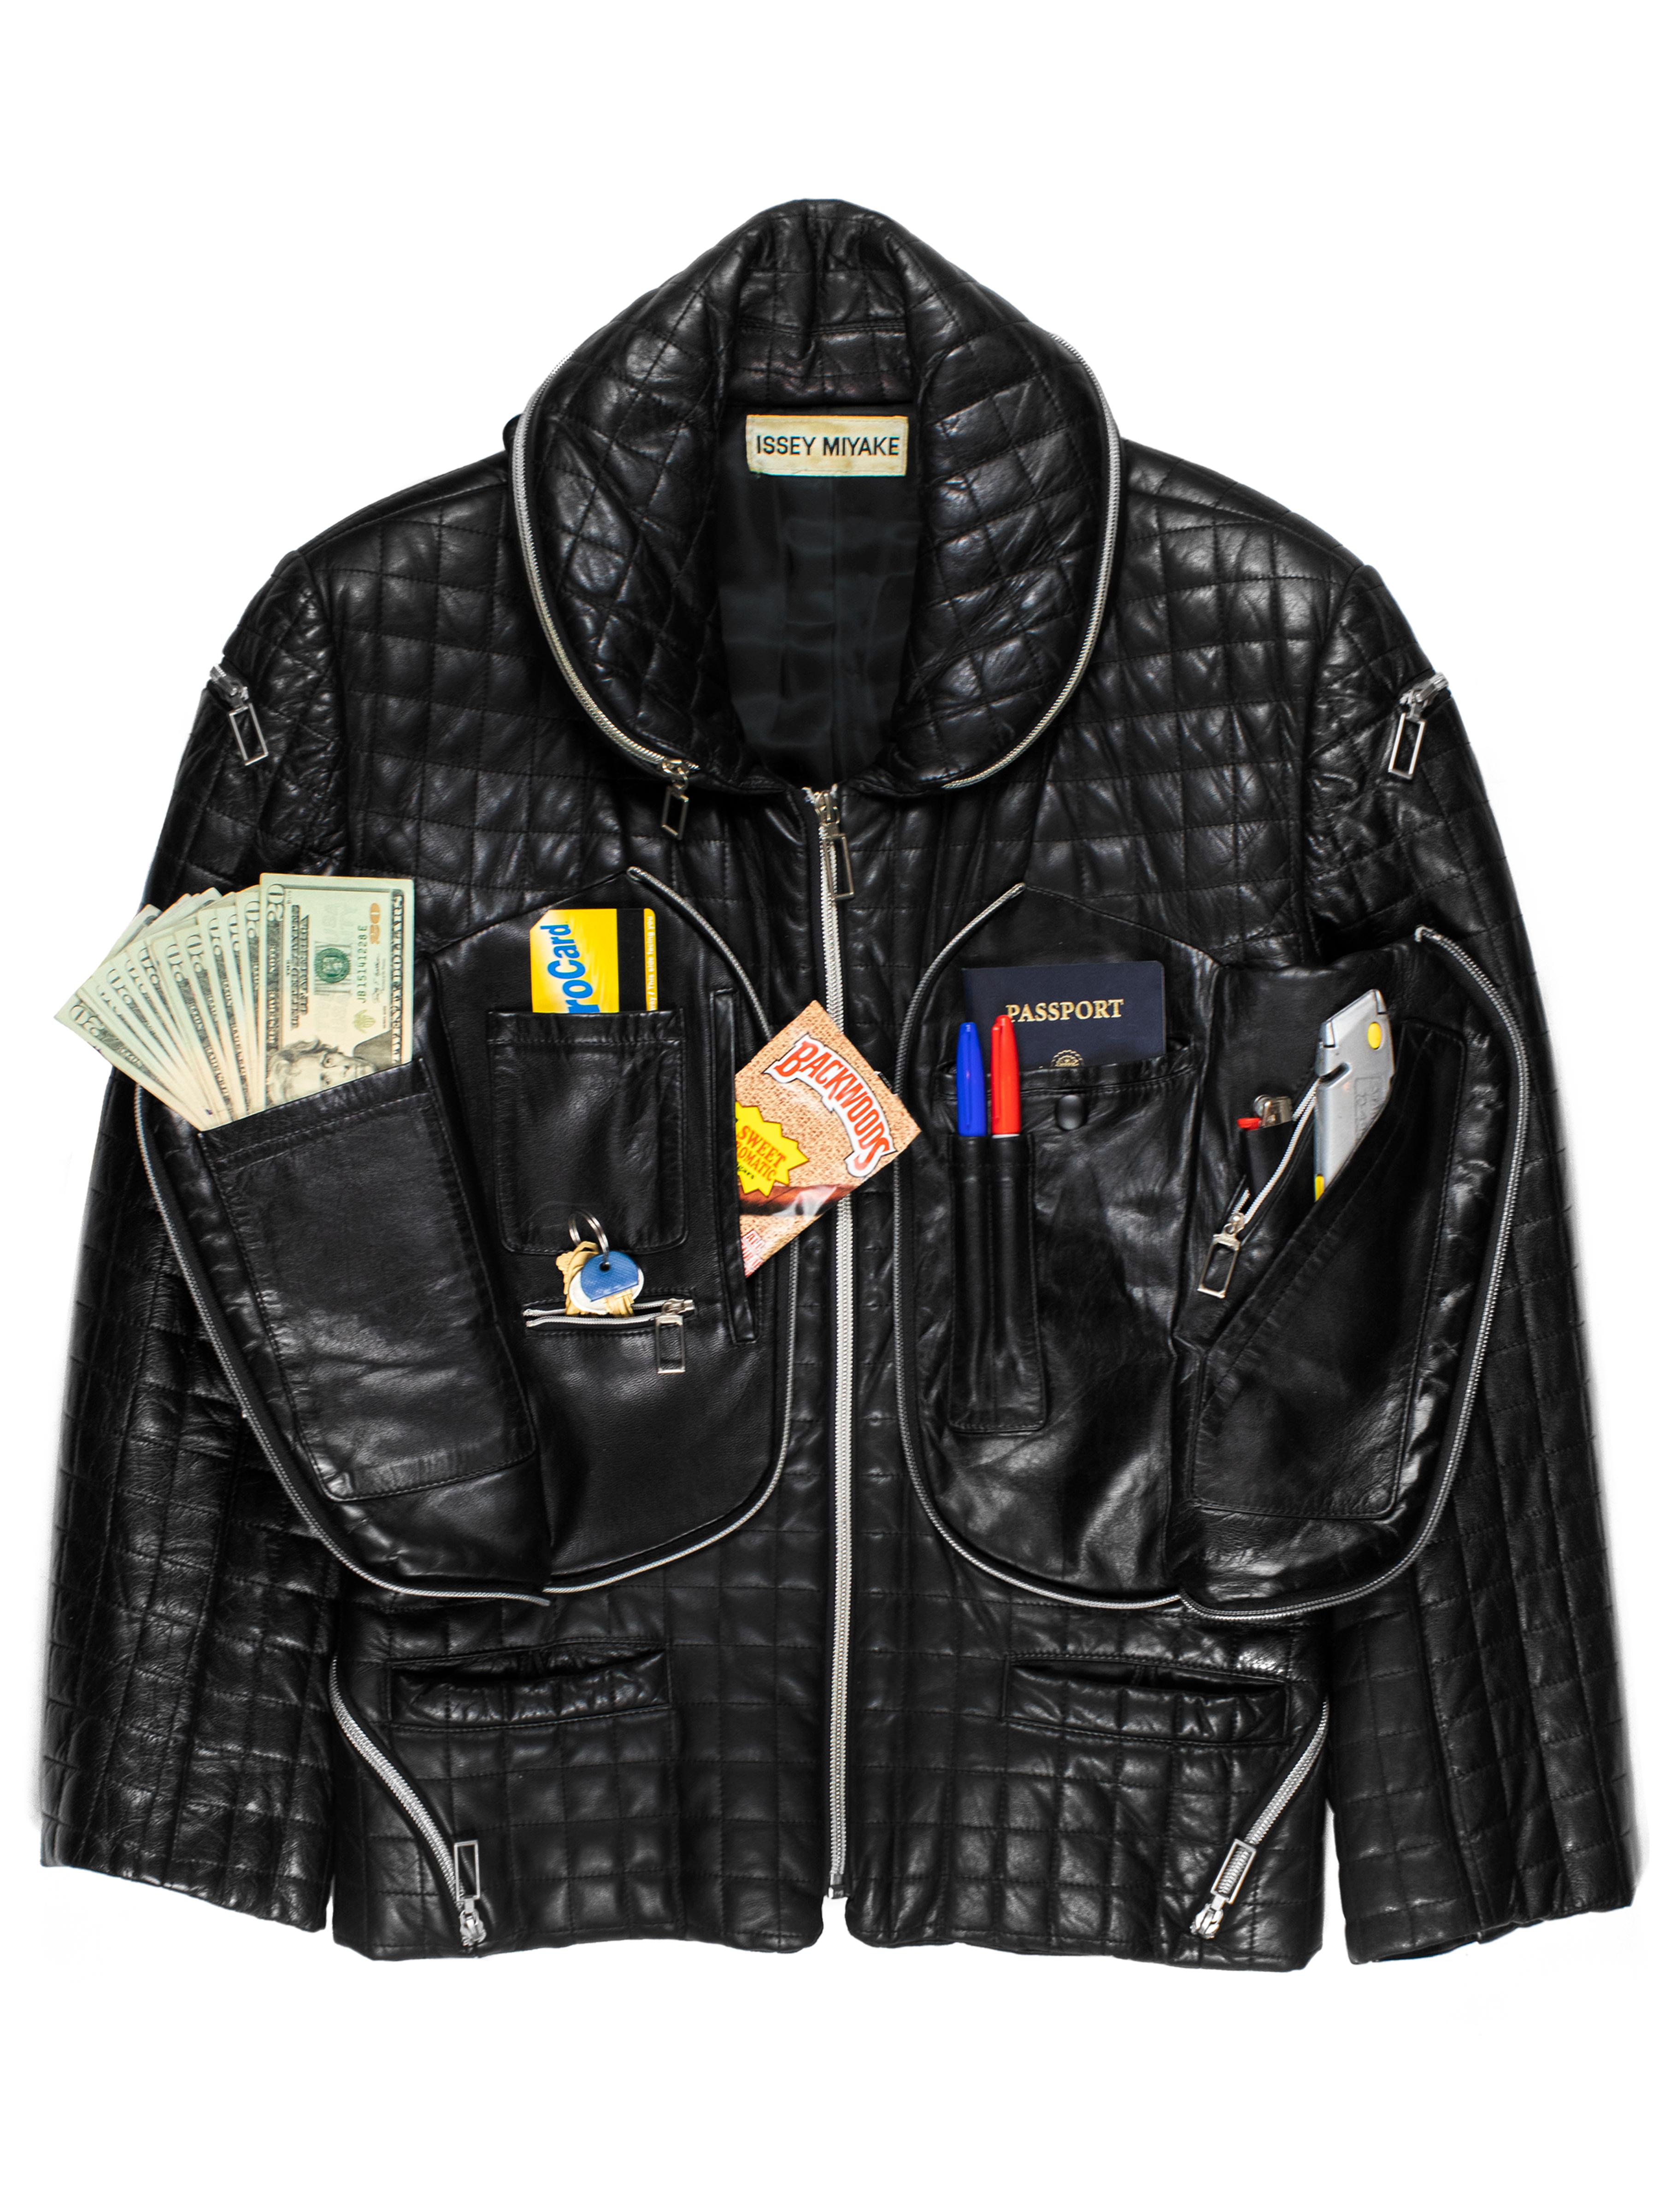 issey miyake leather jacket